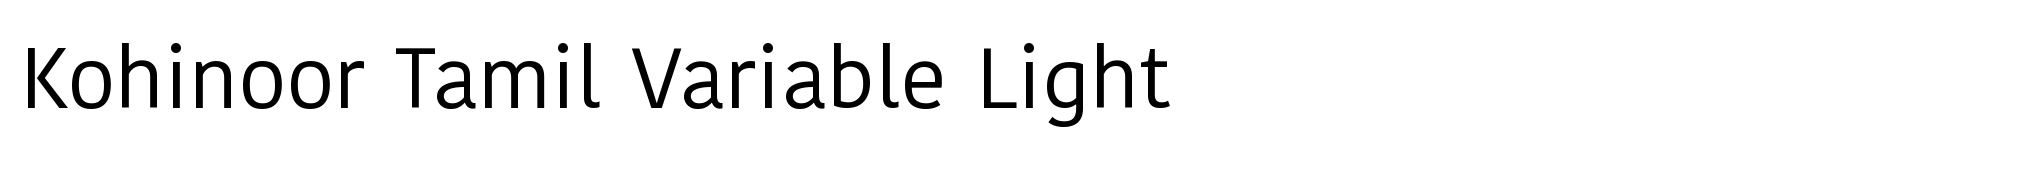 Kohinoor Tamil Variable Light image